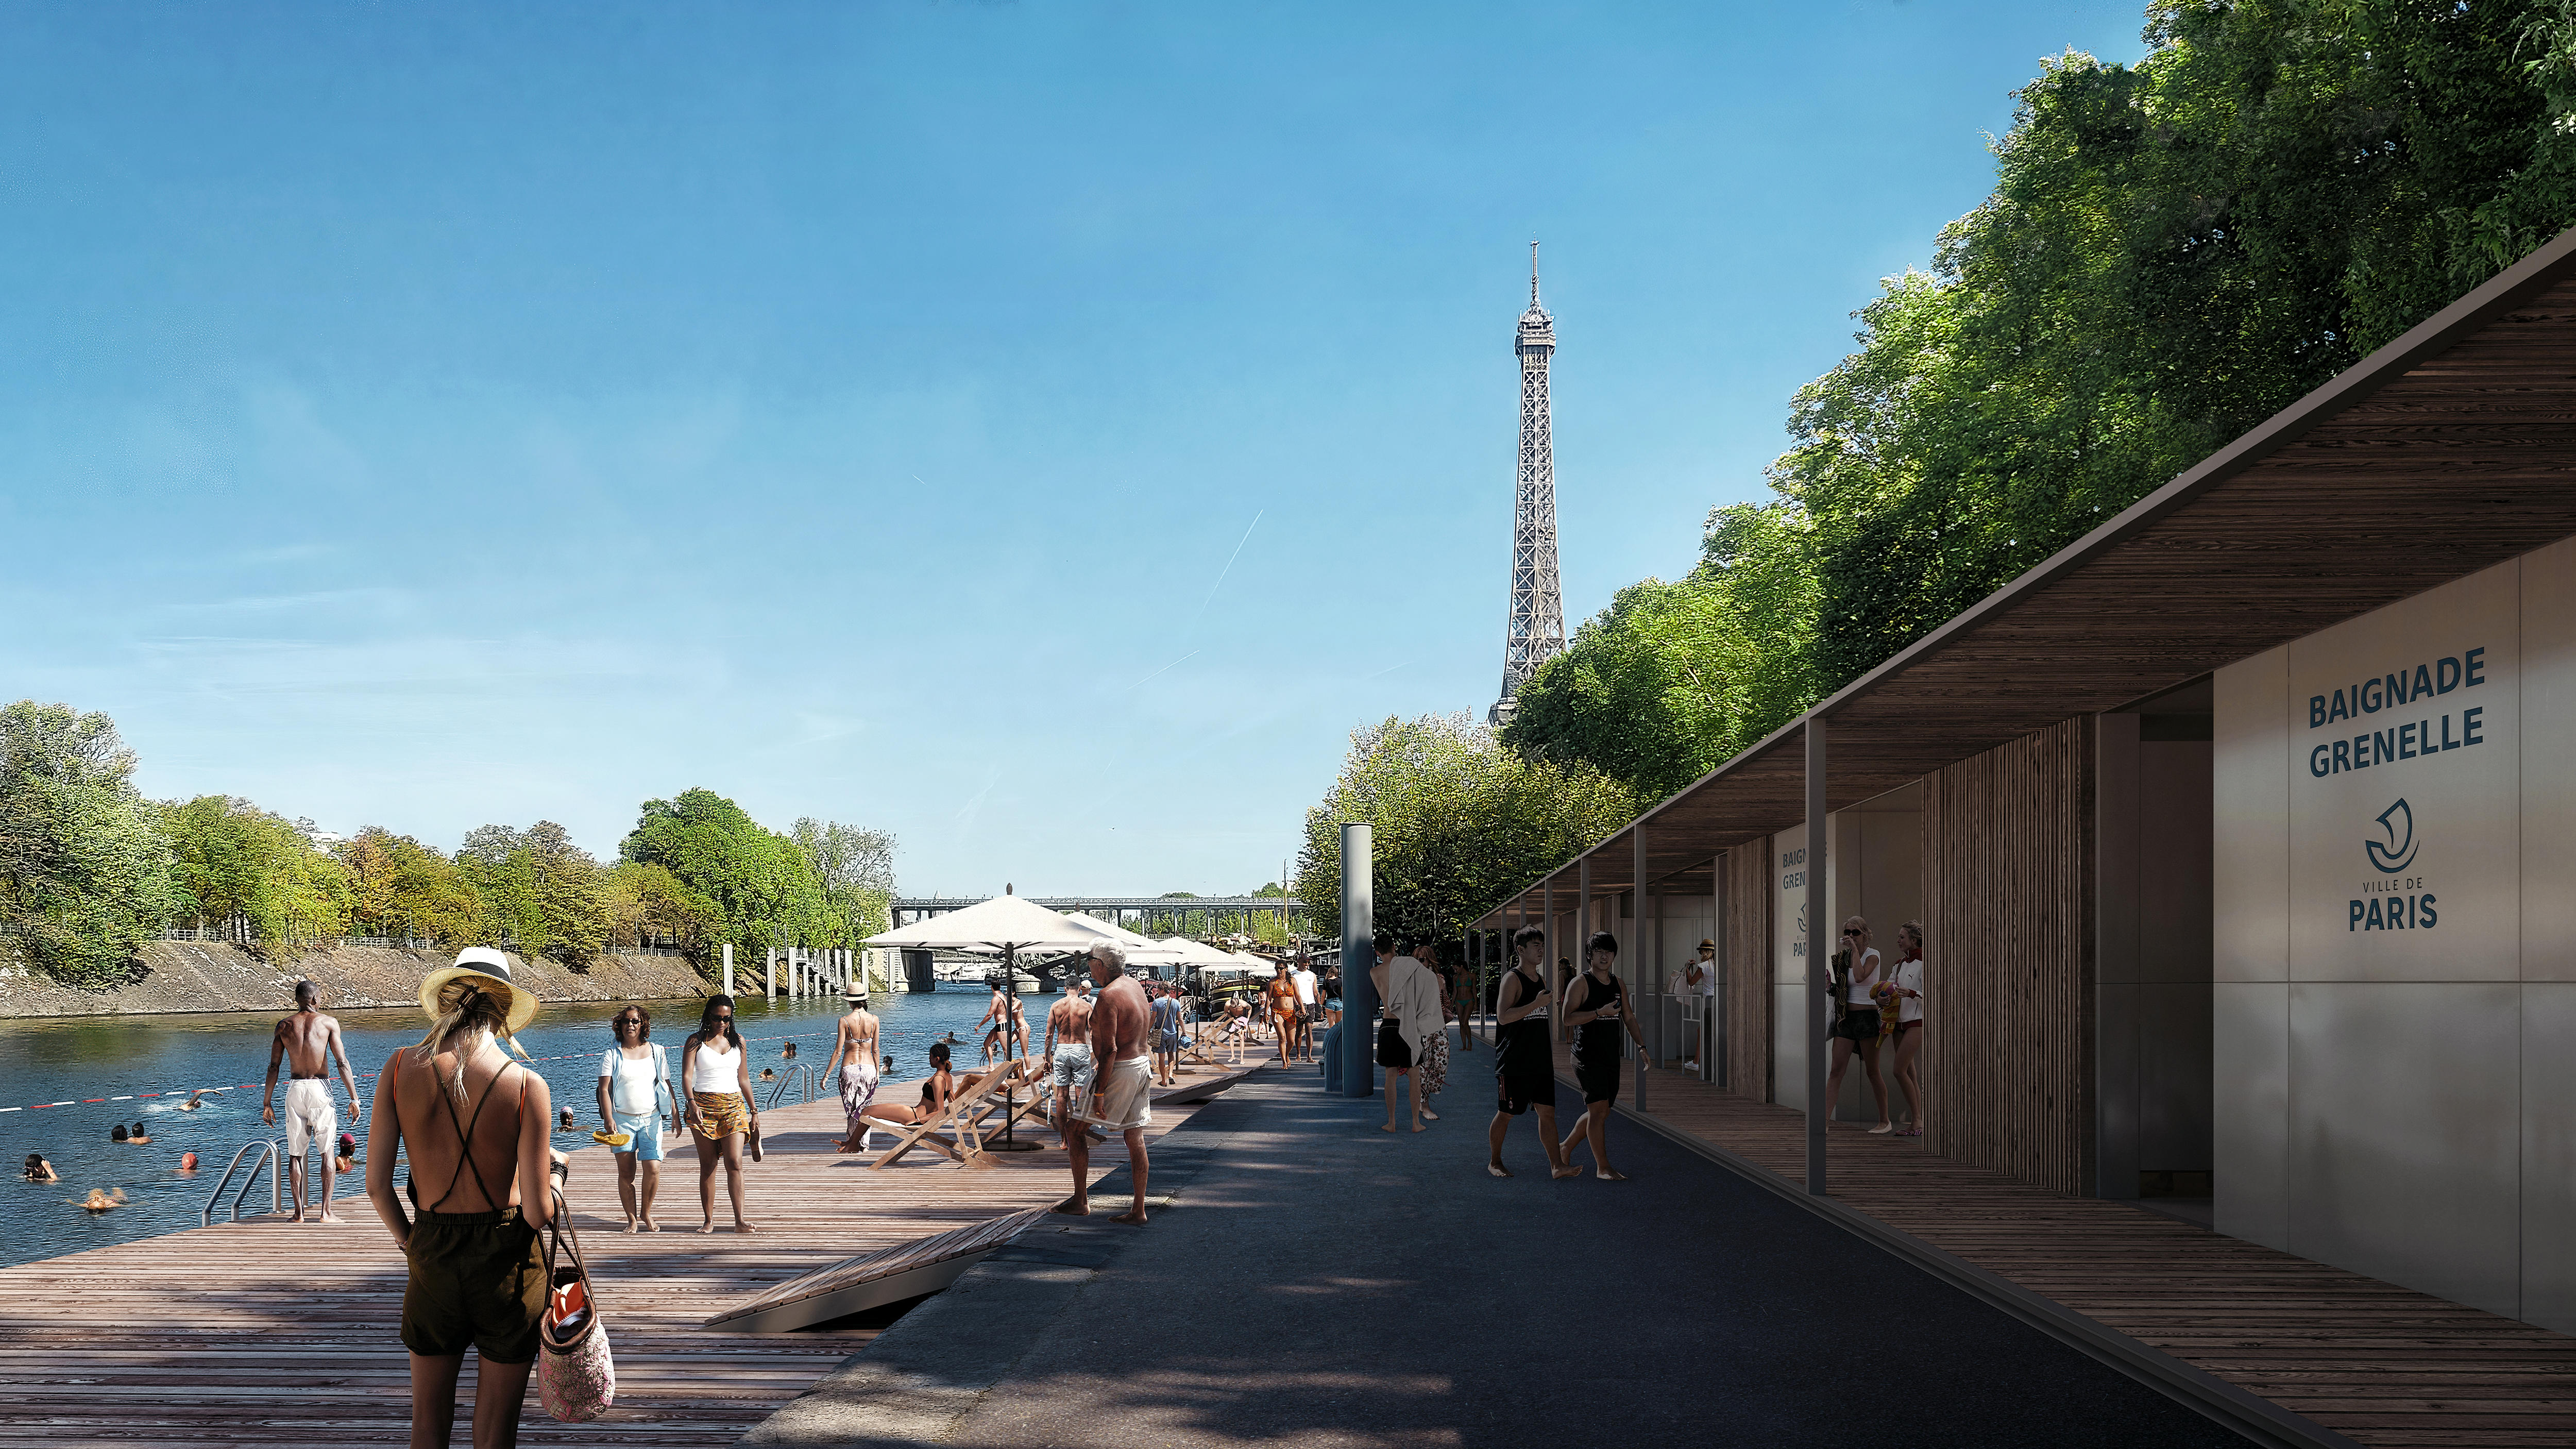 La Ville de Paris prévoit notamment d'ouvrir un site de baignade dans le bras de Grenelle, à quelques centaines de mètres de la tour Eiffel (visuel non contractuel). Photo Ville de Paris